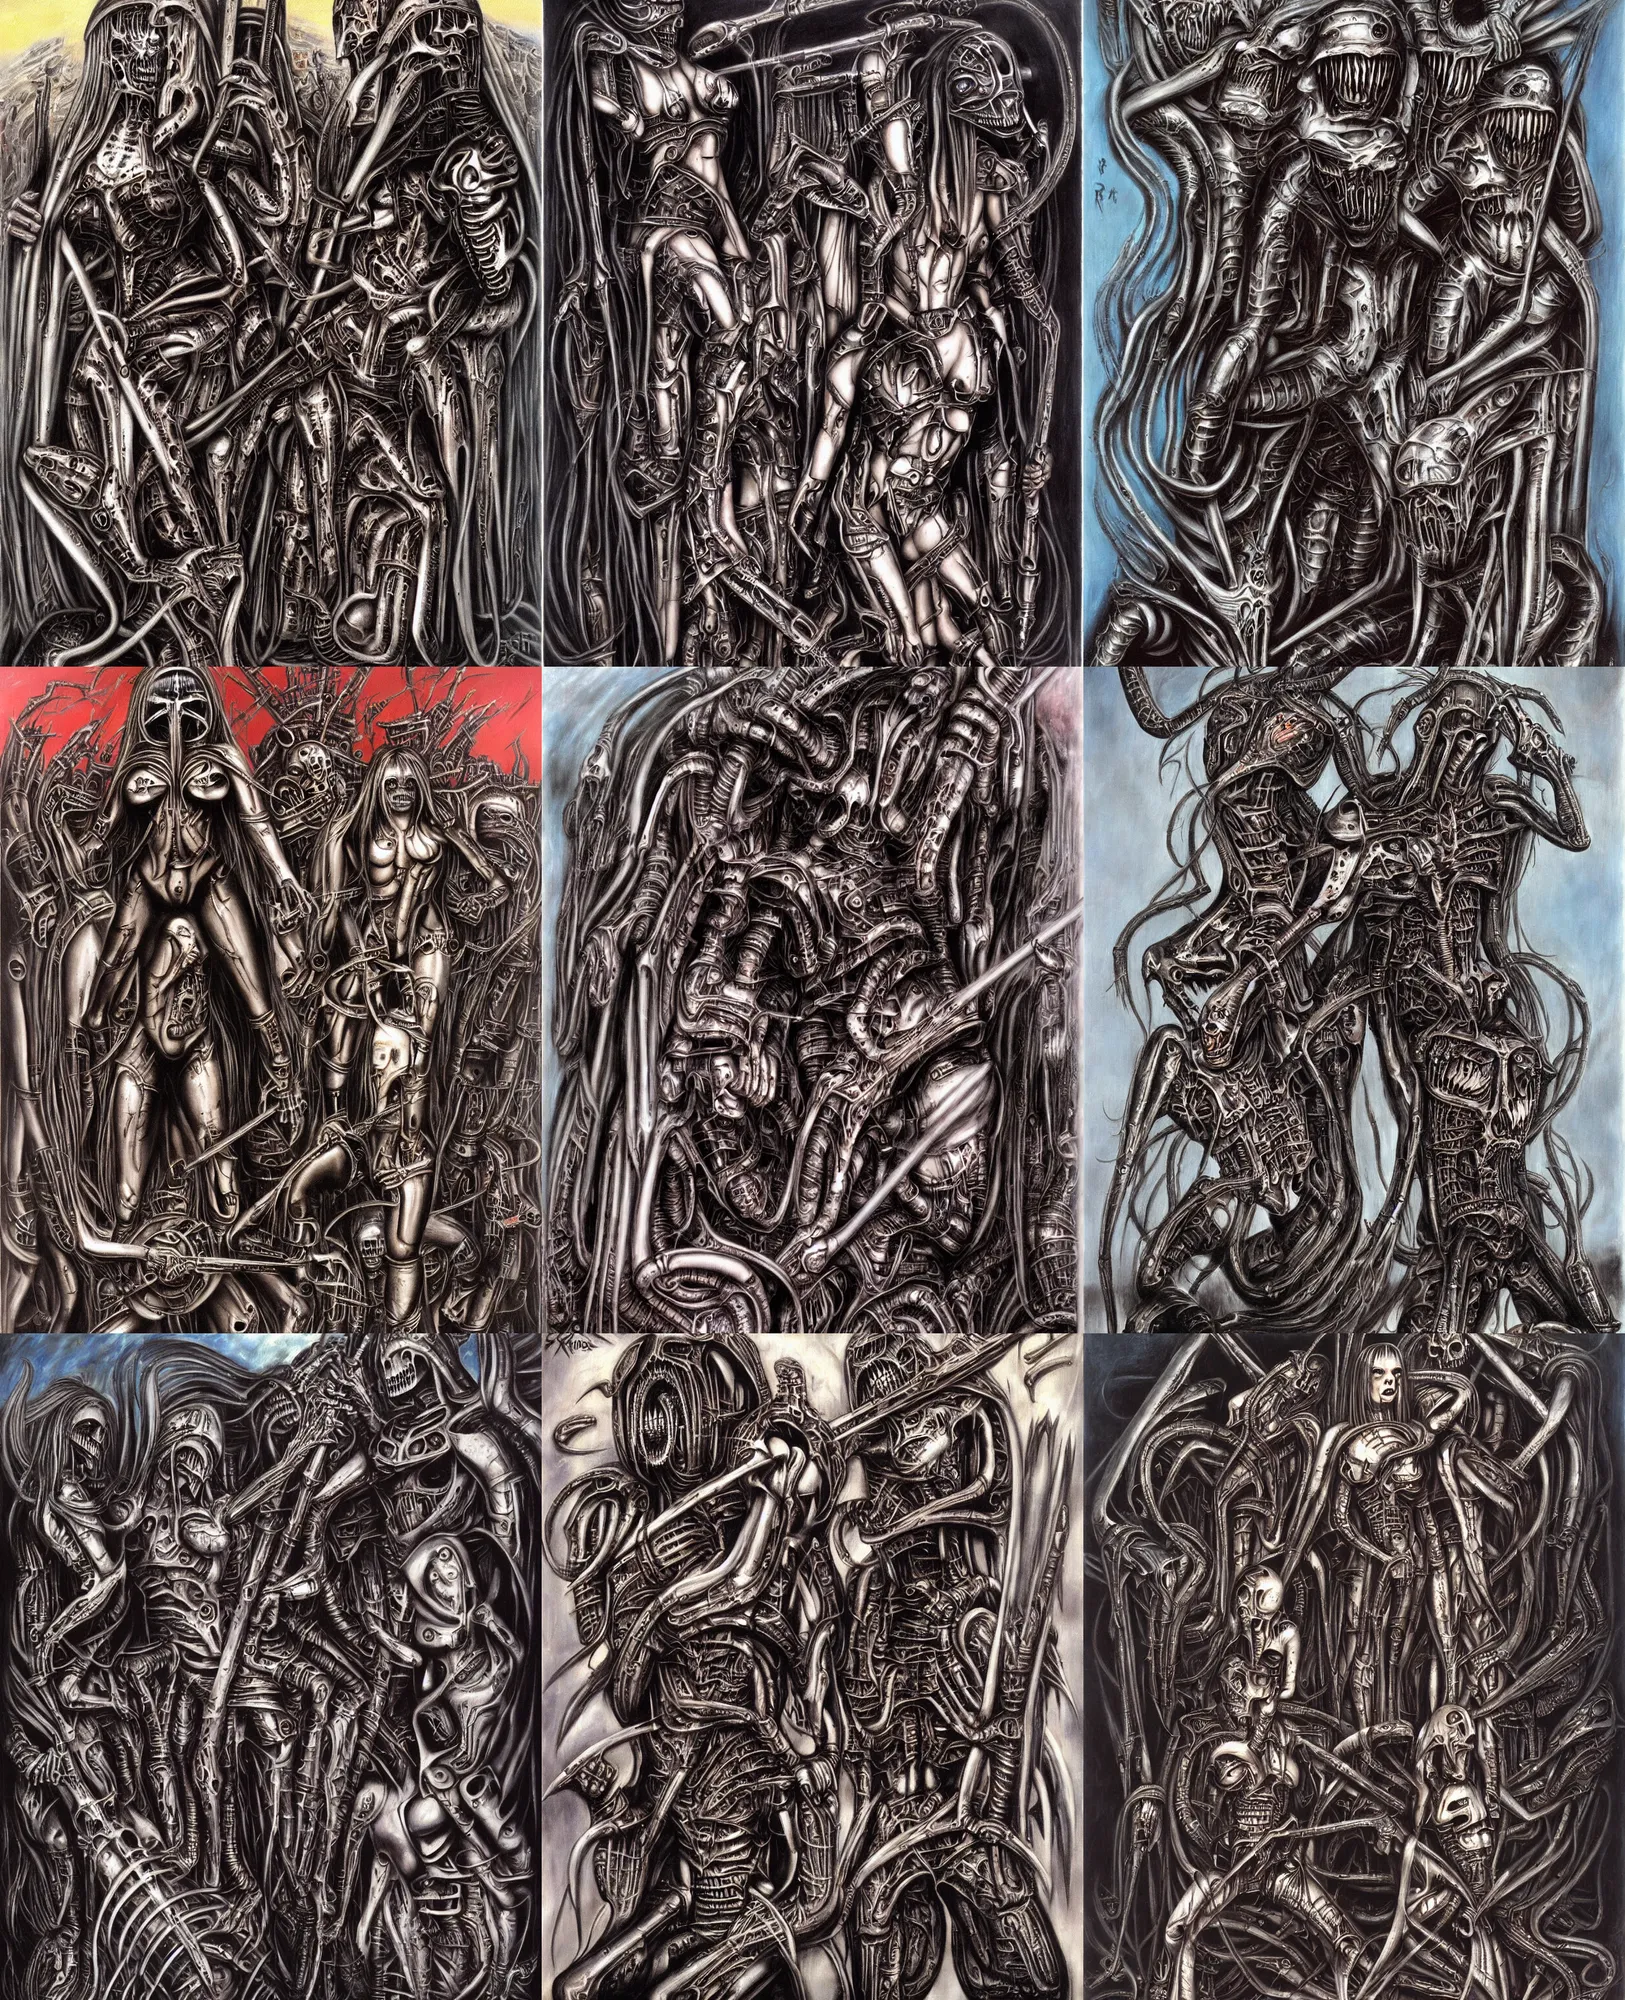 Prompt: iron maidens eddie painted by h. r. giger, very heavy metal, vivid, cool, powermetal